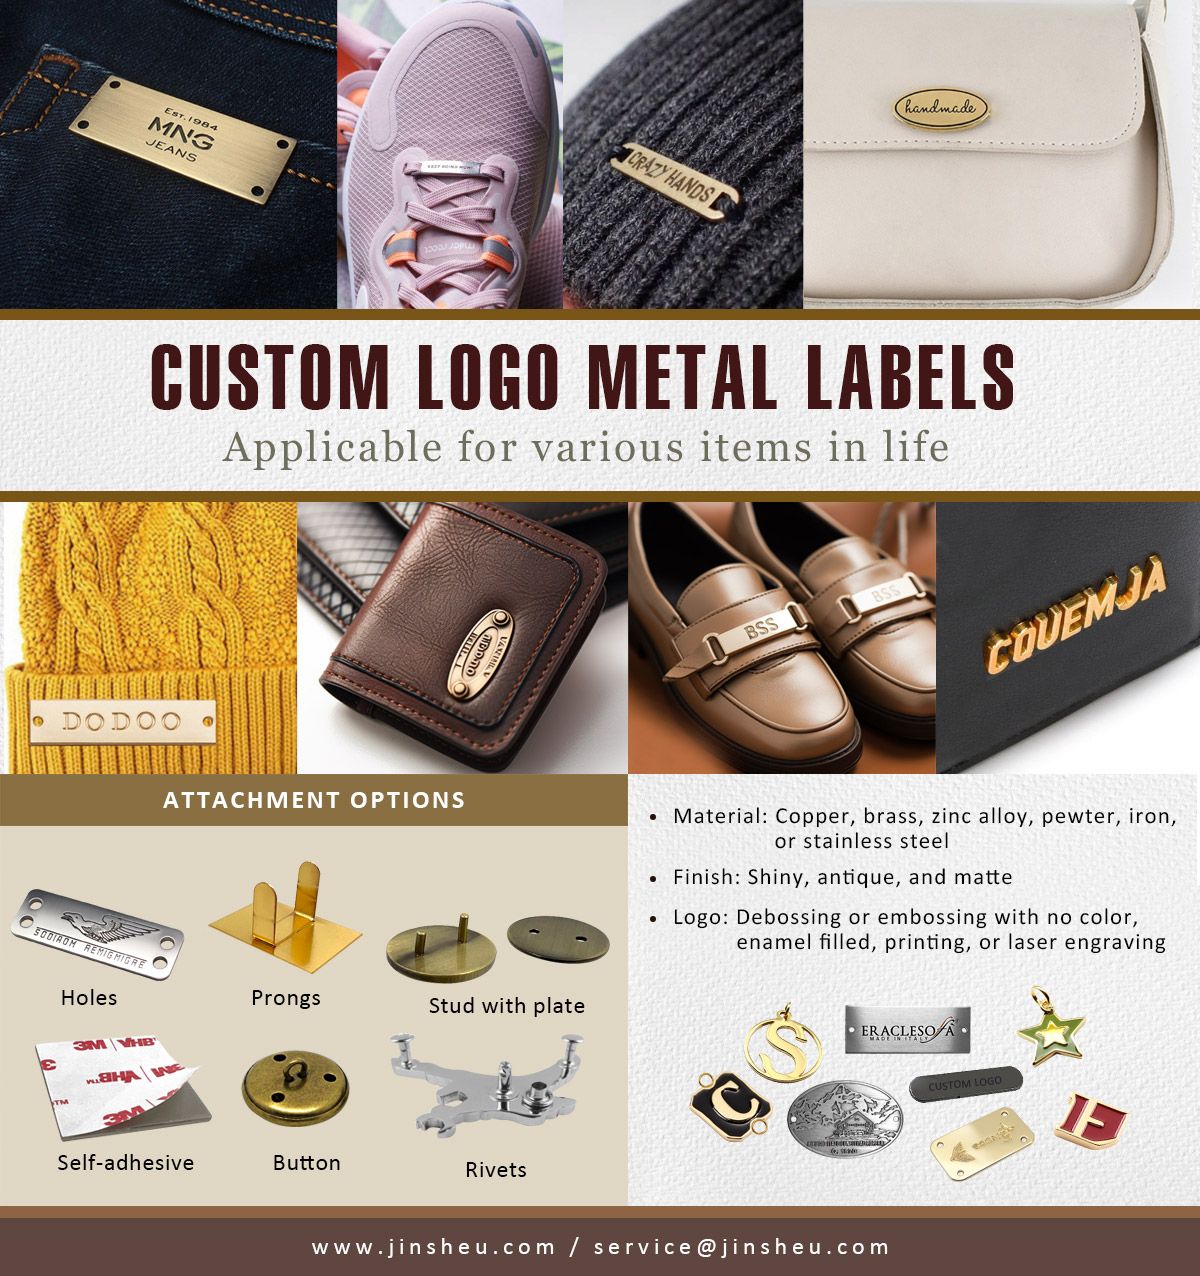 Etichette metalliche personalizzate con loghi di marca